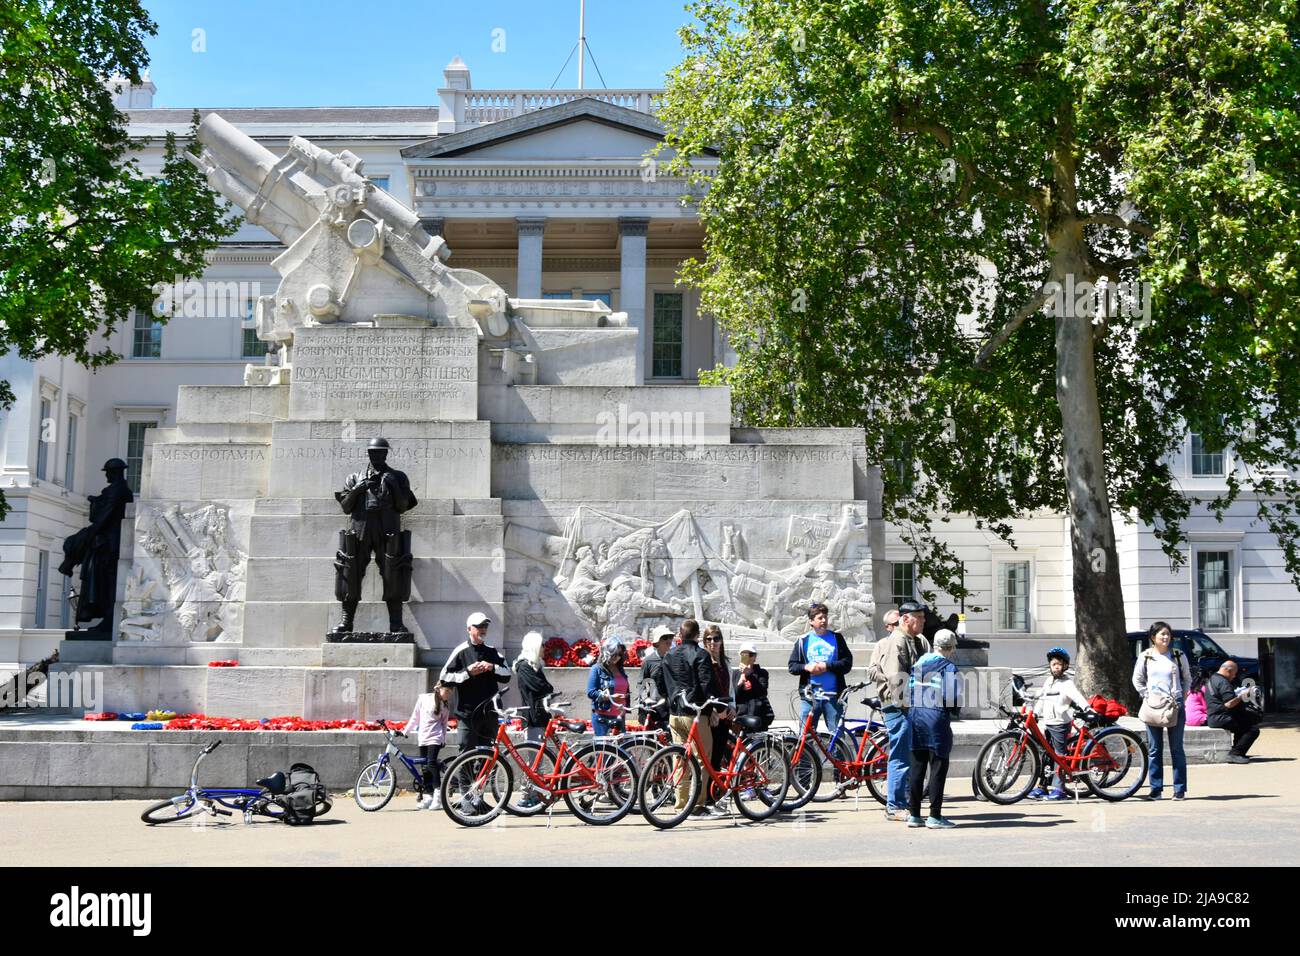 Tourguide bei geführter Führung Gruppe von Frauen und Männern, die sich Fahrräder ausgeliehen haben, um das Royal Artillery Memorial Hyde Park Corner London England zu besichtigen Stockfoto